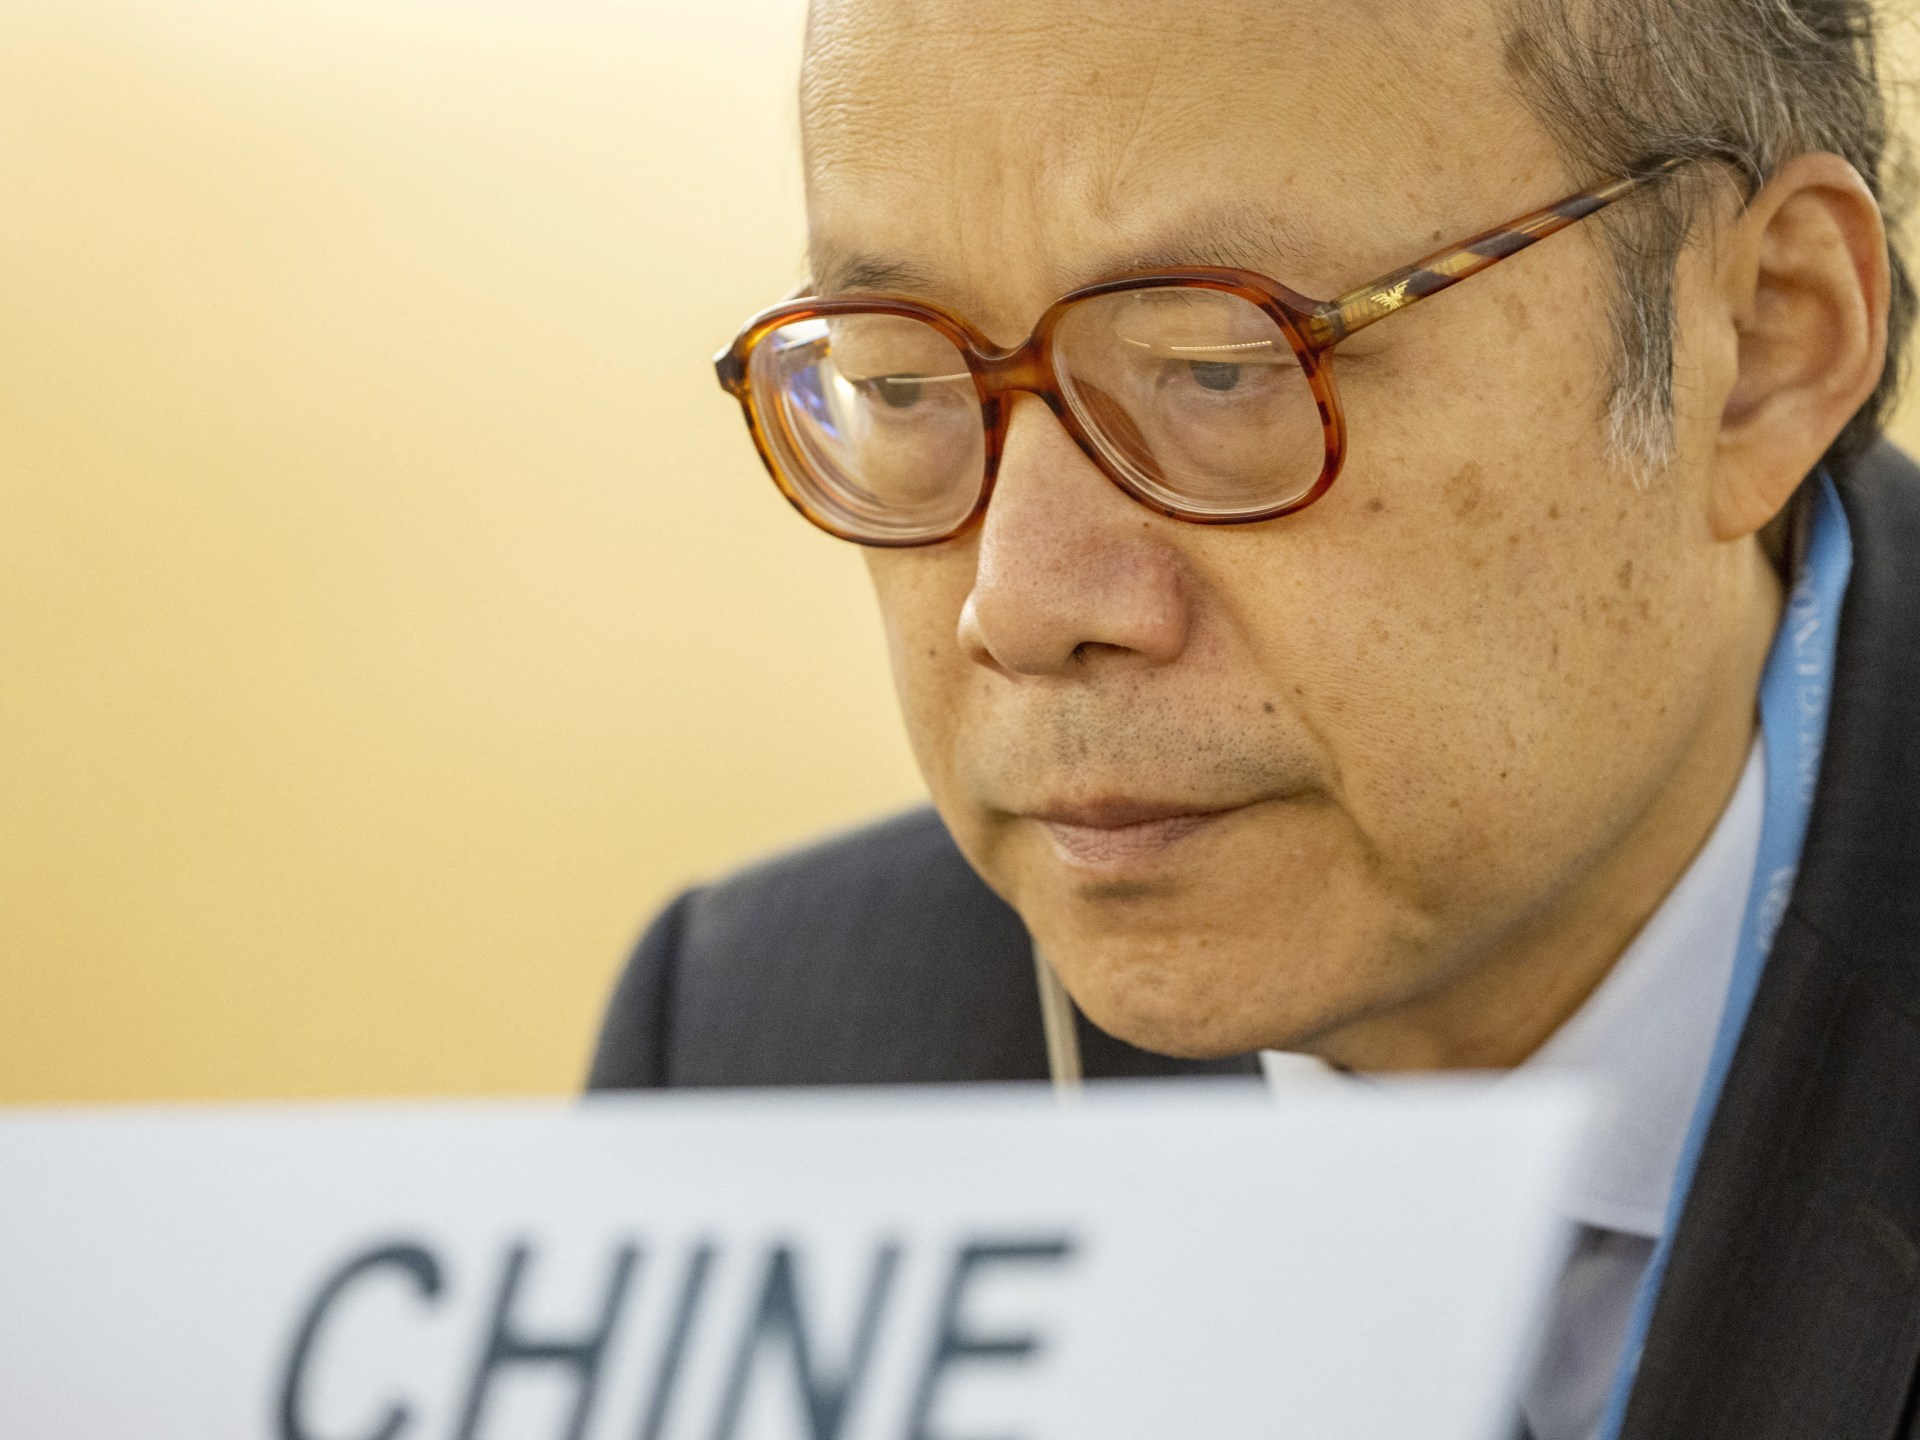 Perpecahan global terlihat jelas ketika catatan hak asasi manusia Tiongkok menghadapi pengawasan PBB |  Berita hak asasi manusia